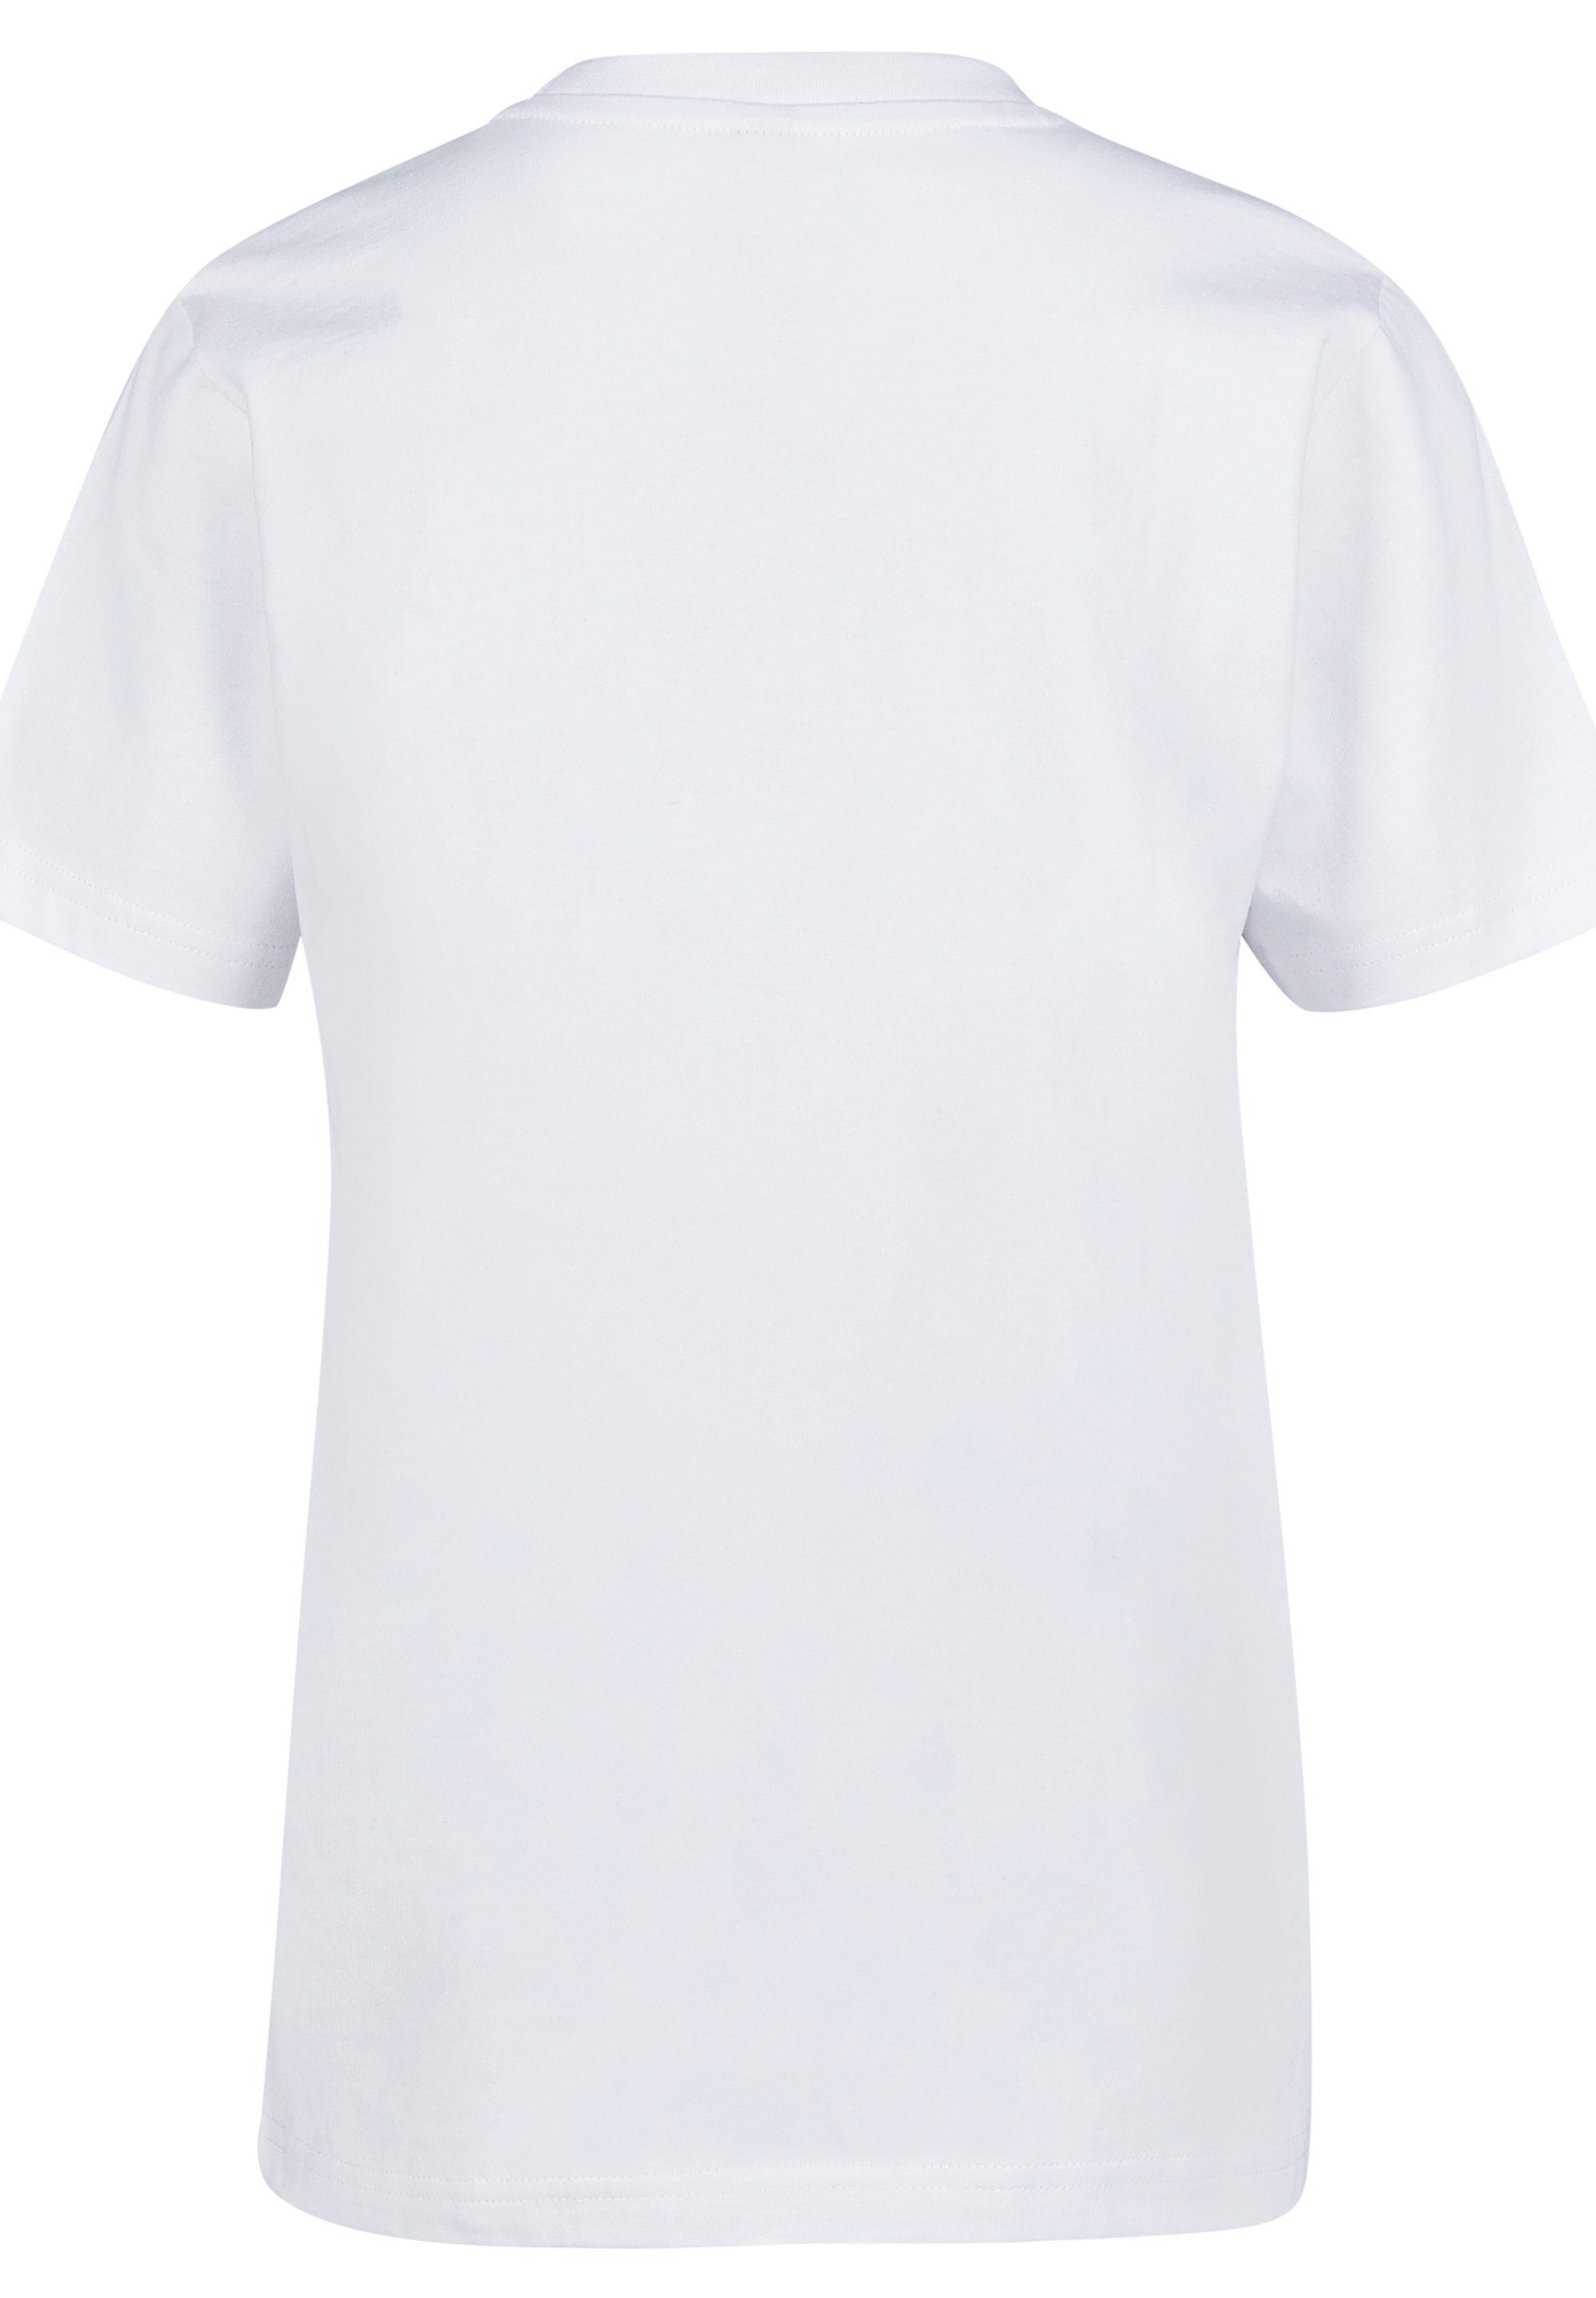 F4NT4STIC T-Shirt Star Logo Unisex Kinder,Premium Merch,Jungen,Mädchen,Bedruckt Minimalist Wars